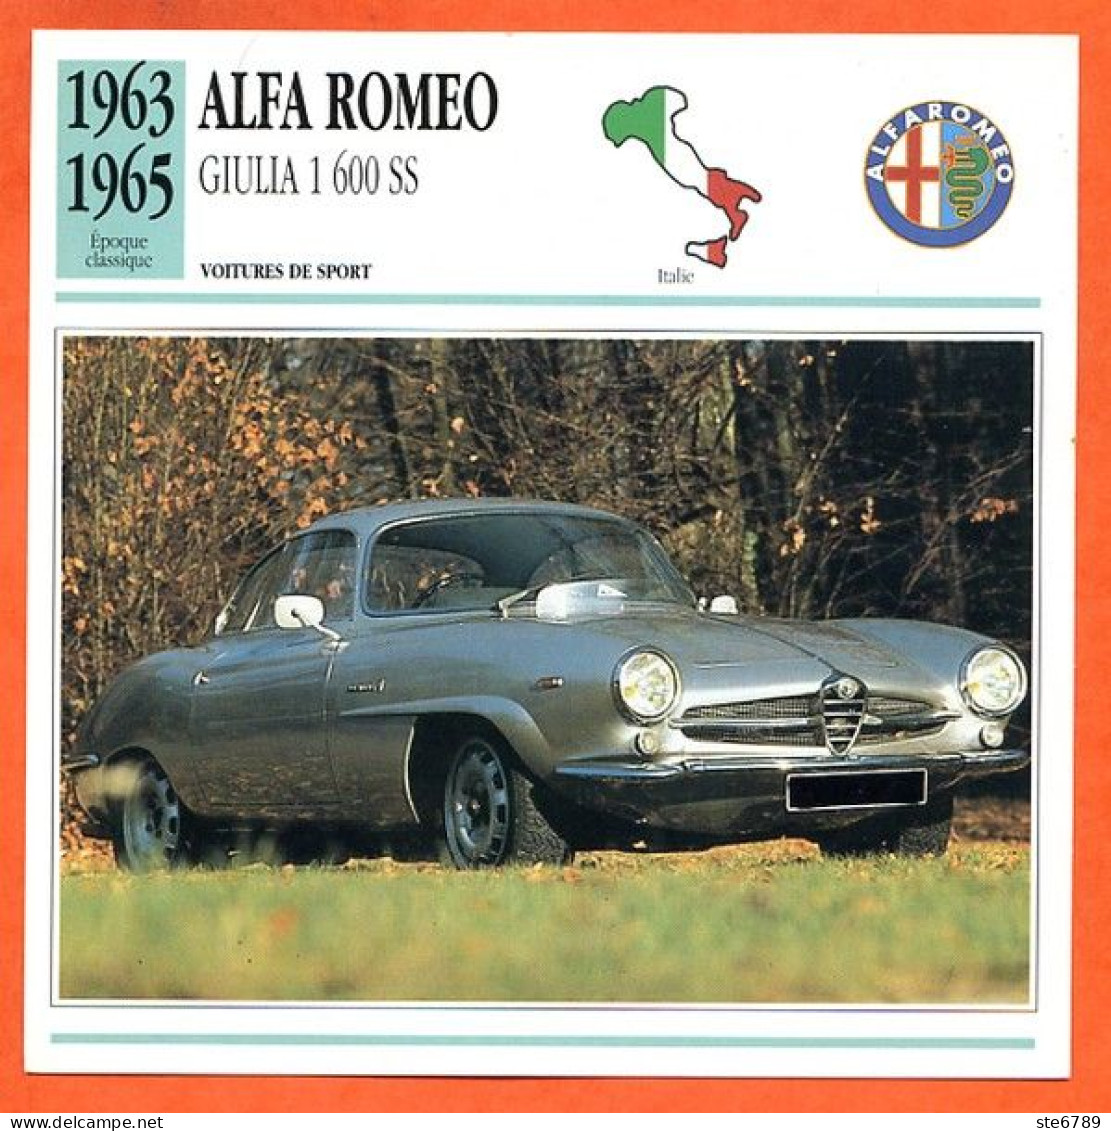 ALFA ROMEO GIULIA 1600 S 1963 Voiture De Sport Italie Fiche Technique Automobile - Cars